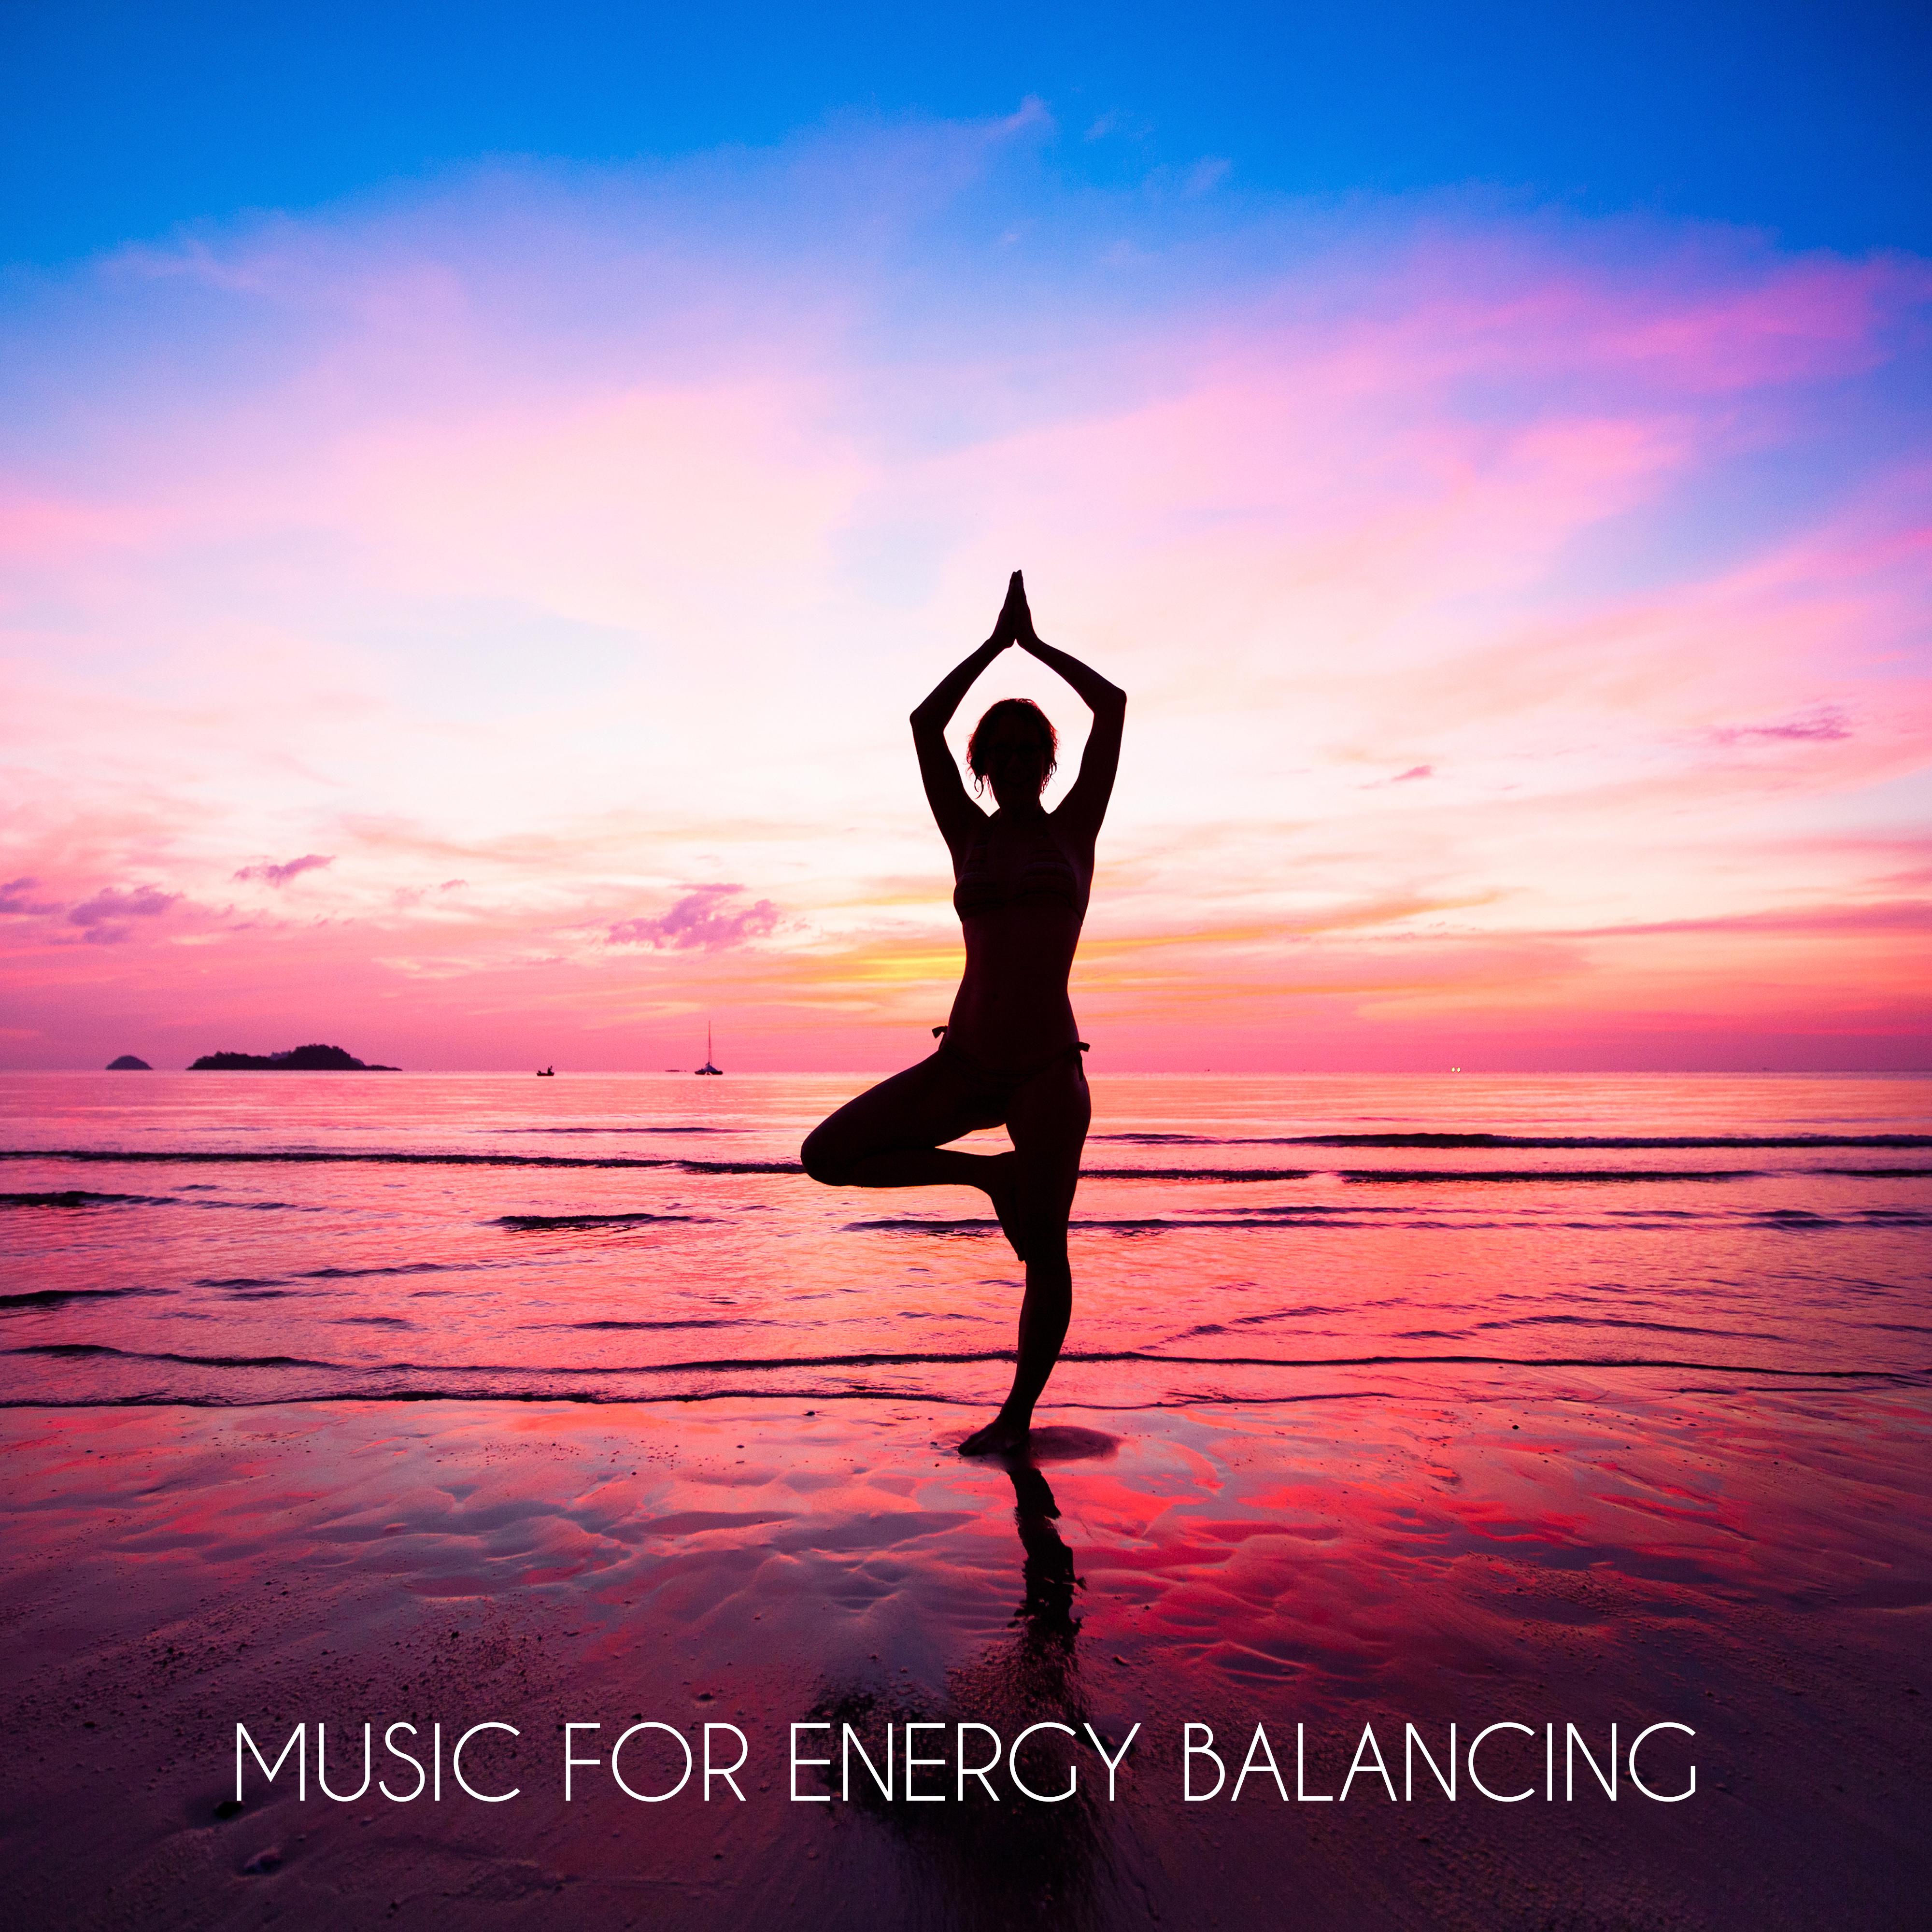 Music for Energy Balancing